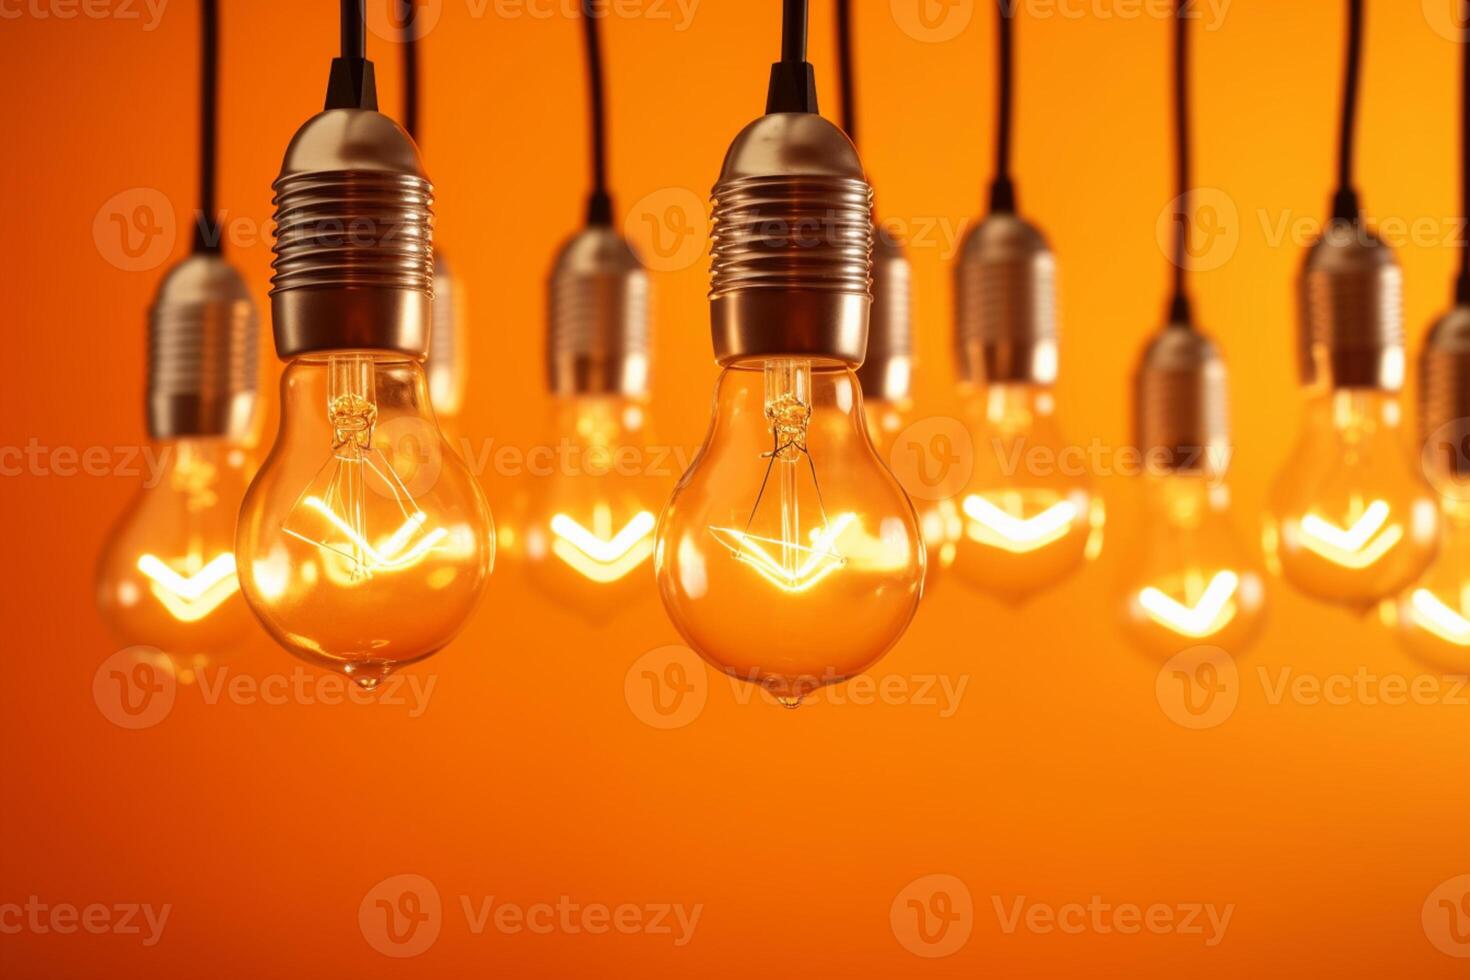 Idea concept on light bulb hanging on orange background, photo